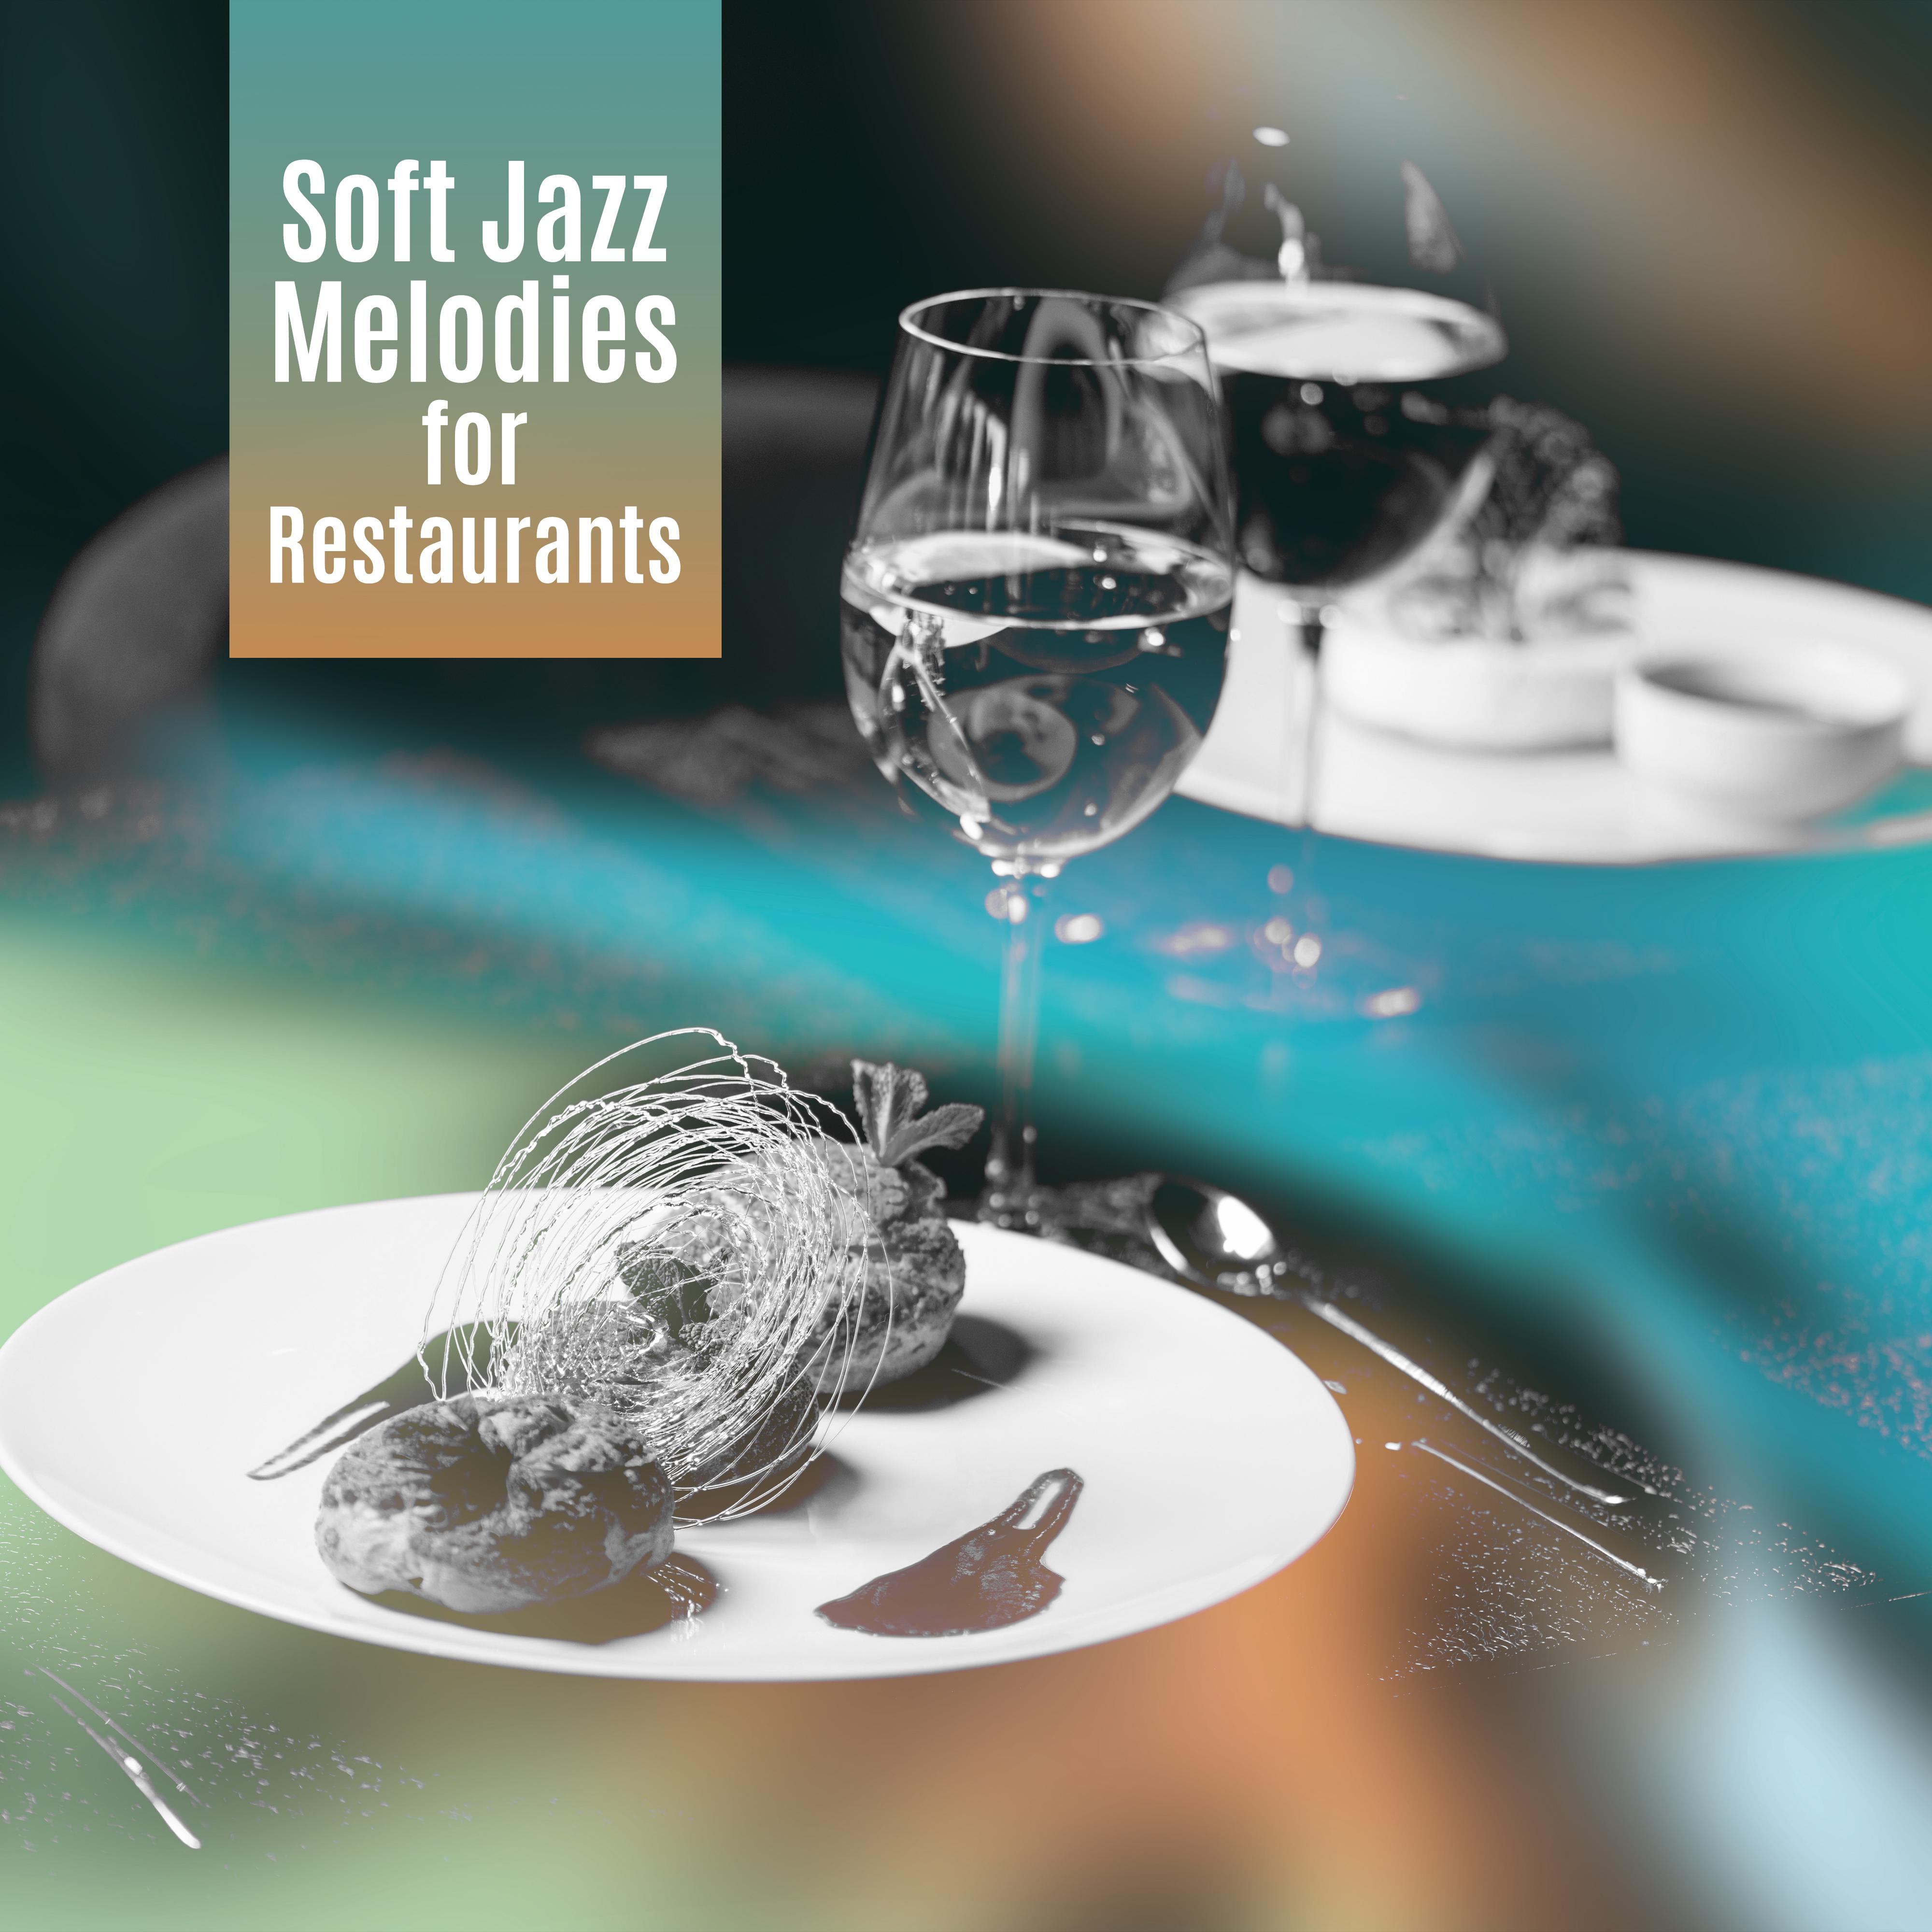 Soft Jazz Melodies for Restaurants